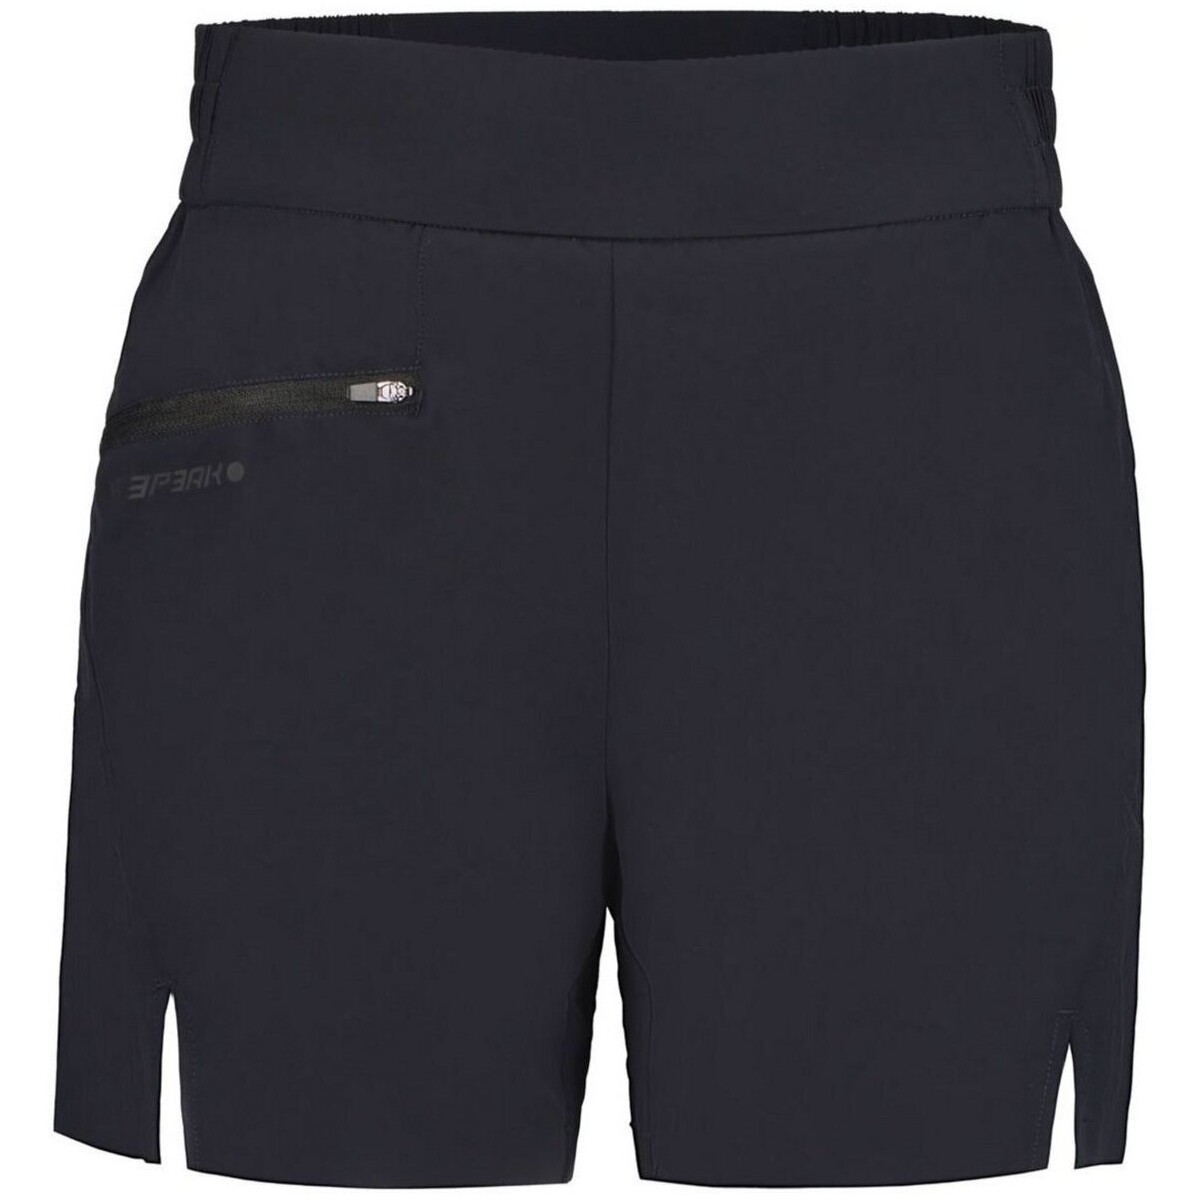 Kleidung Damen Shorts / Bermudas Icepeak Sport DA SHORT DIEPPE 54501607I 990 Schwarz